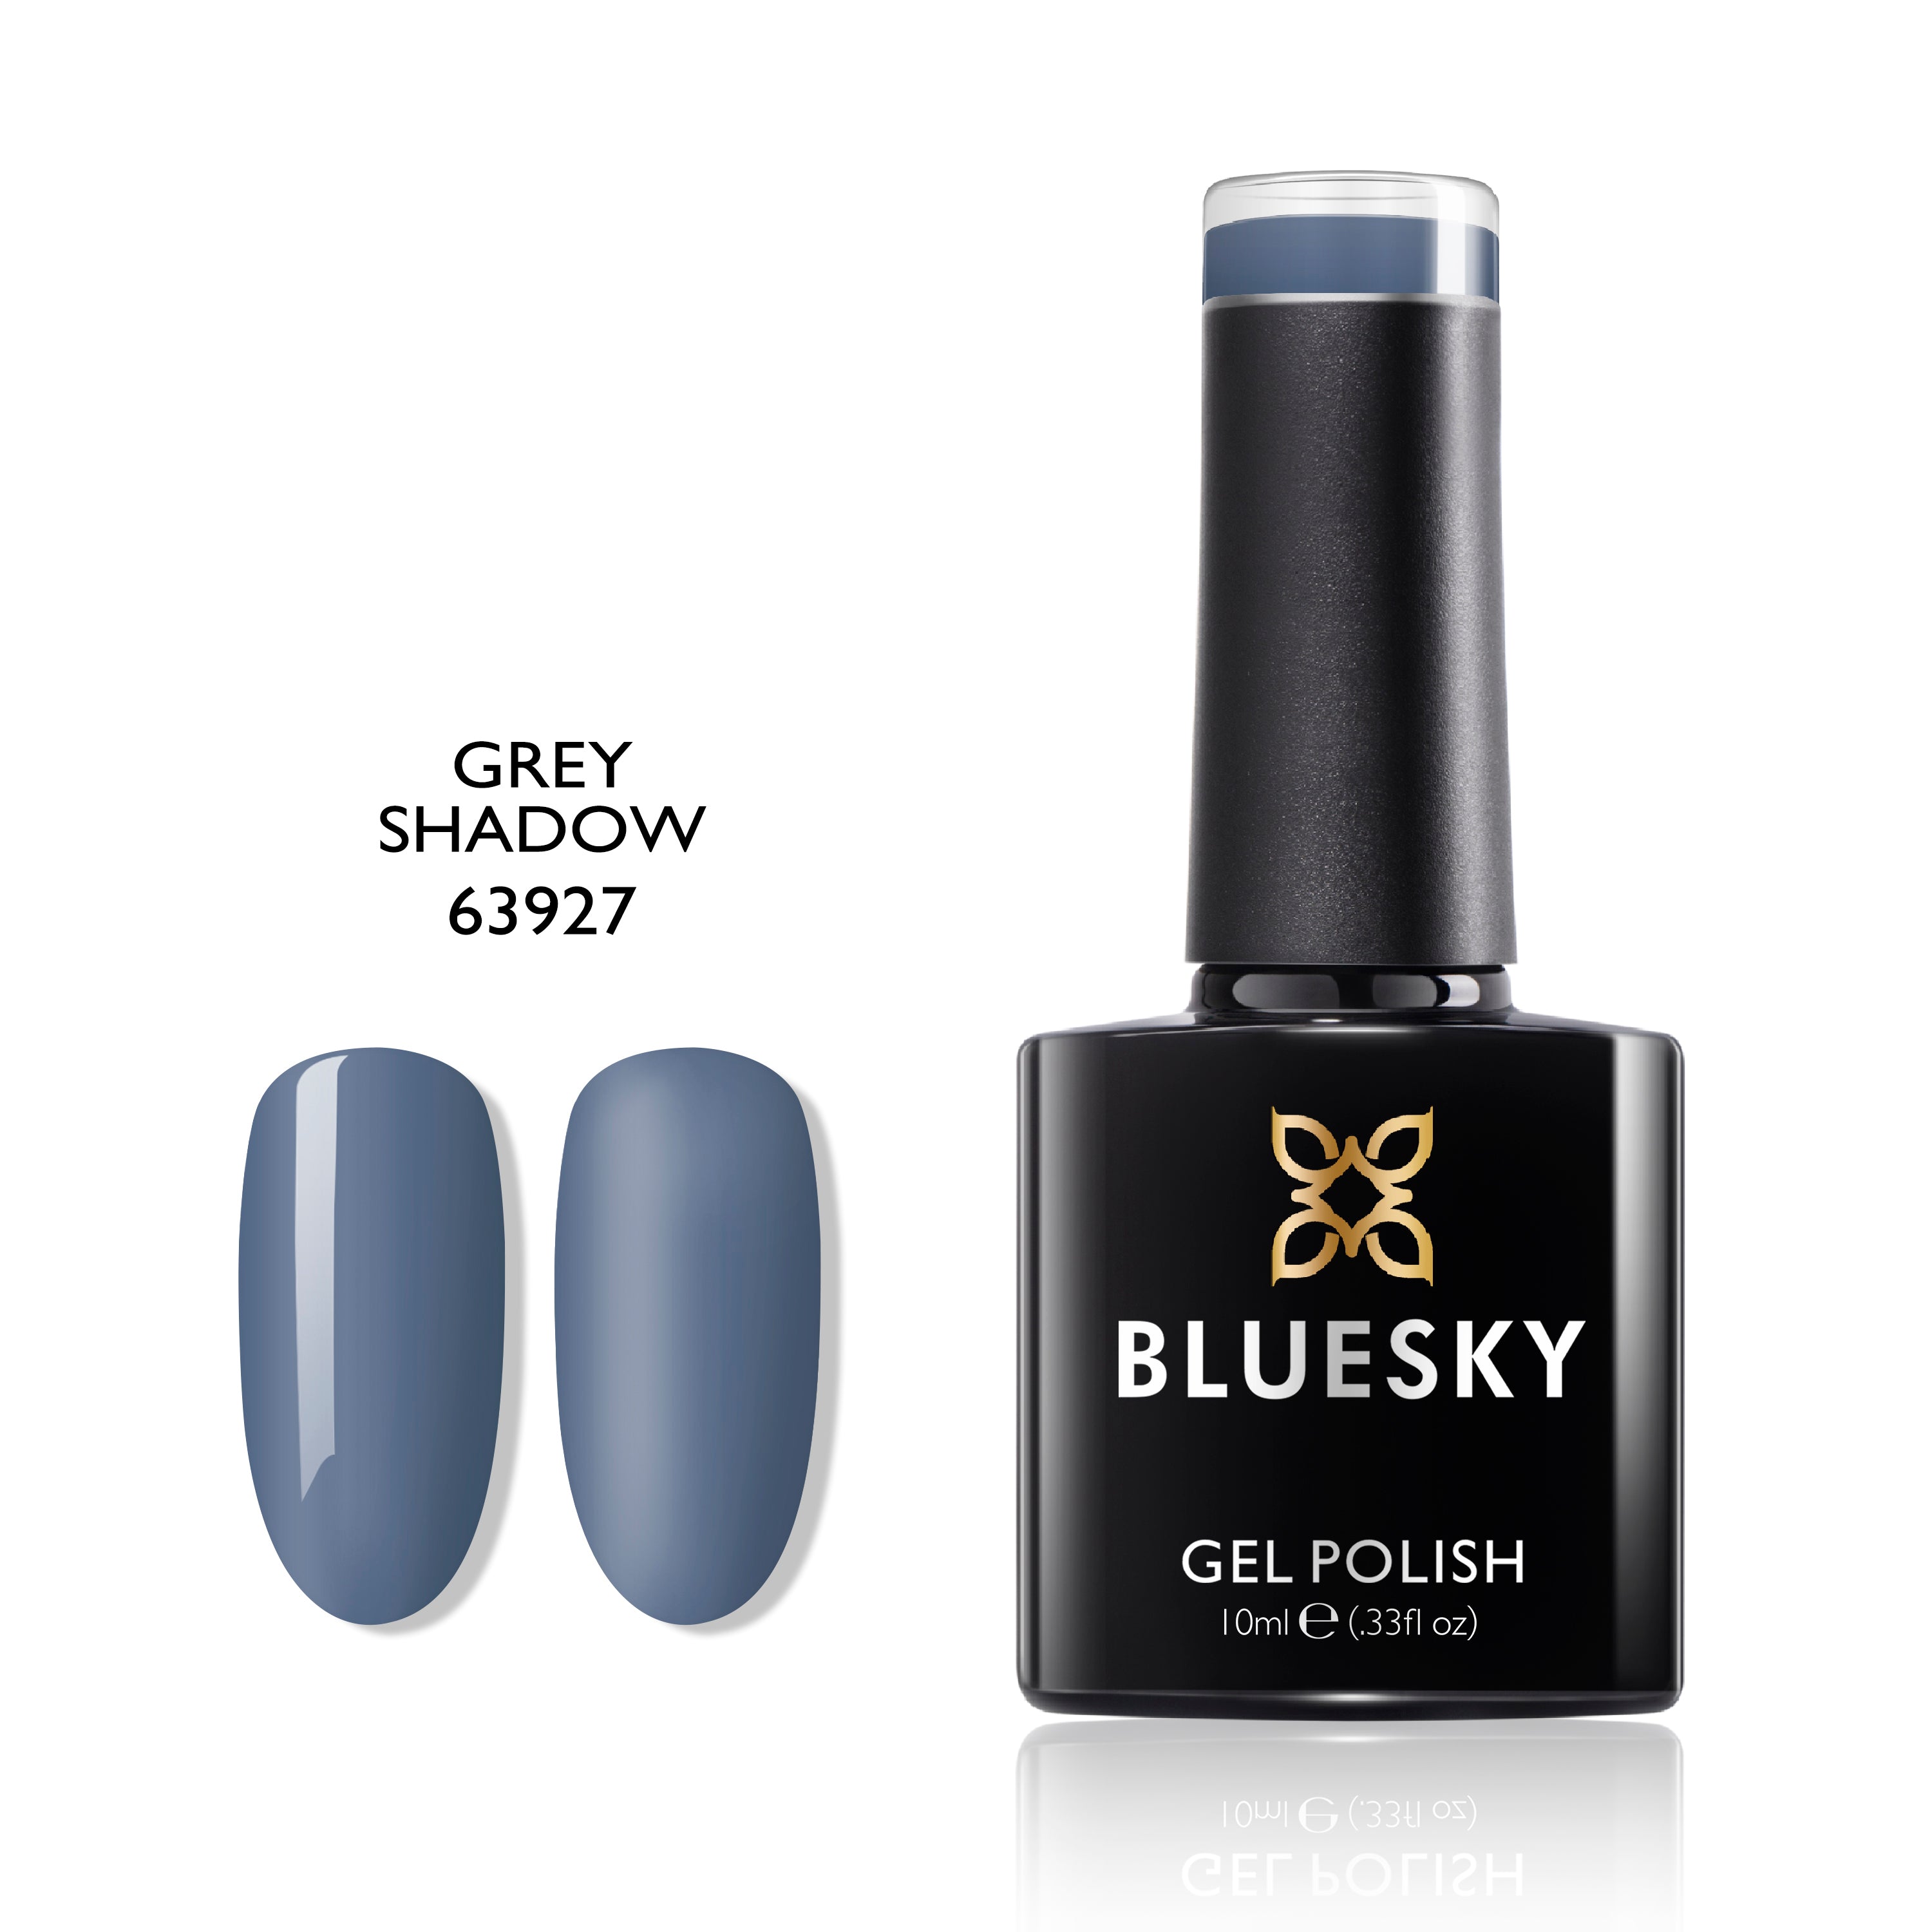 GREY SHADOW | 10ml Gel Polish - BLUESKY